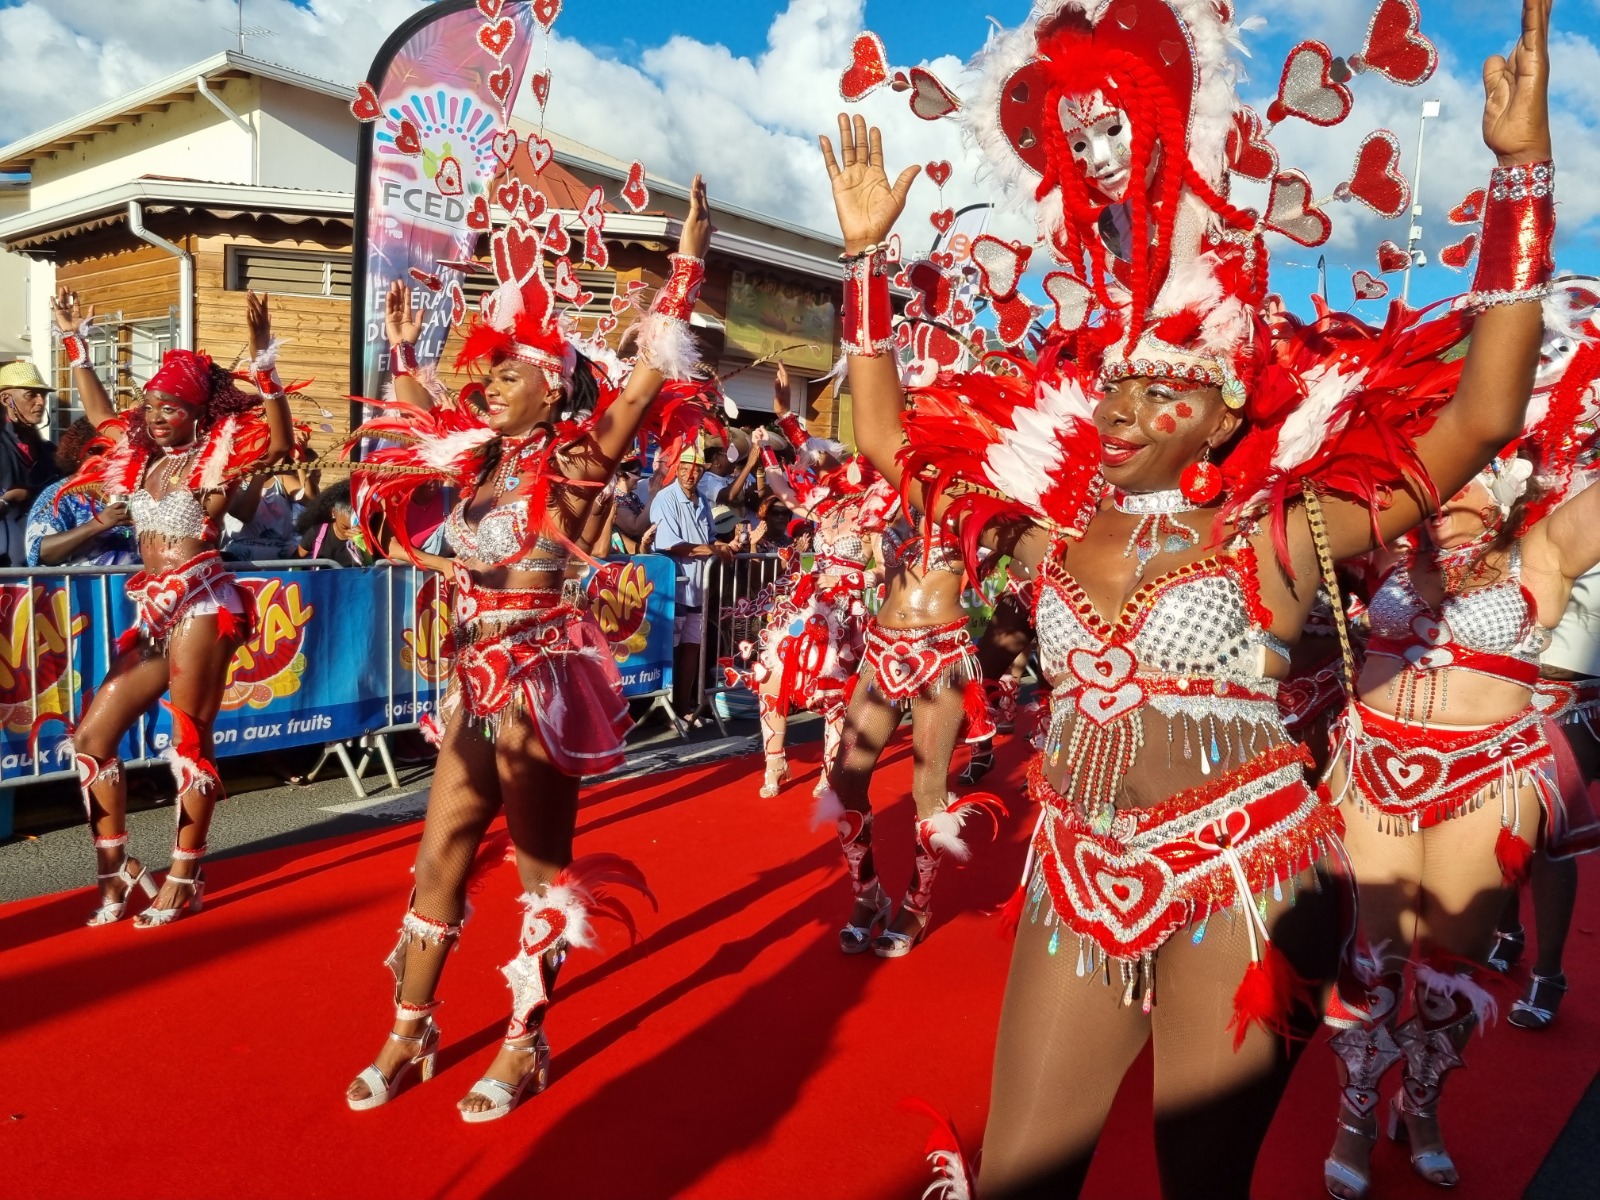     Les carnavals de Guadeloupe et de Martinique classés parmi les plus beaux du monde

